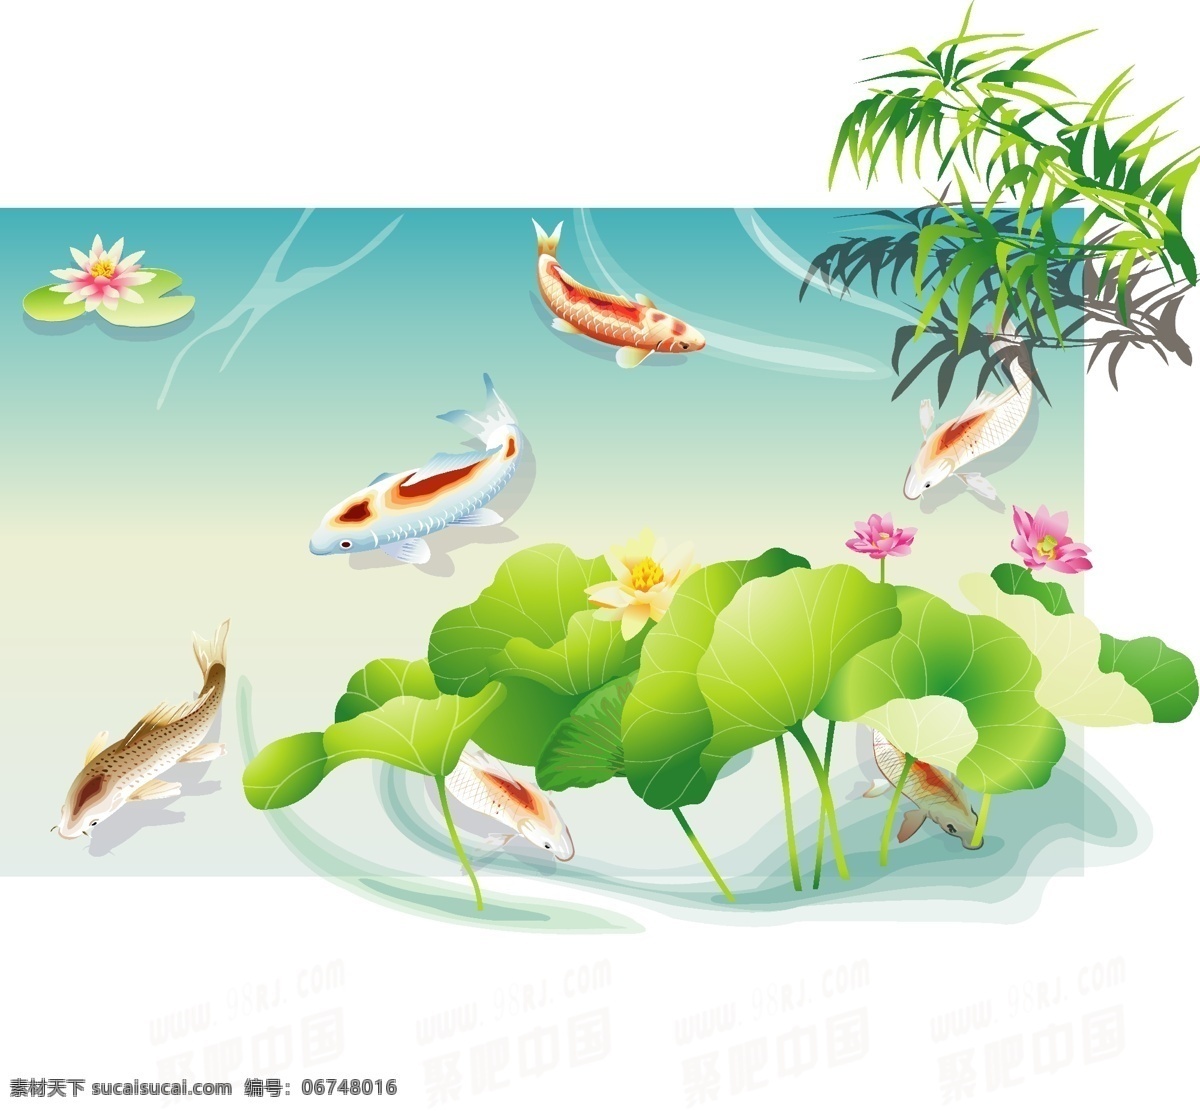 吉祥图案 鲤鱼 美术绘画 设计素材 生物世界 矢量图库 水墨画 文化艺术 水墨鱼群 中国古典 水 鱼类